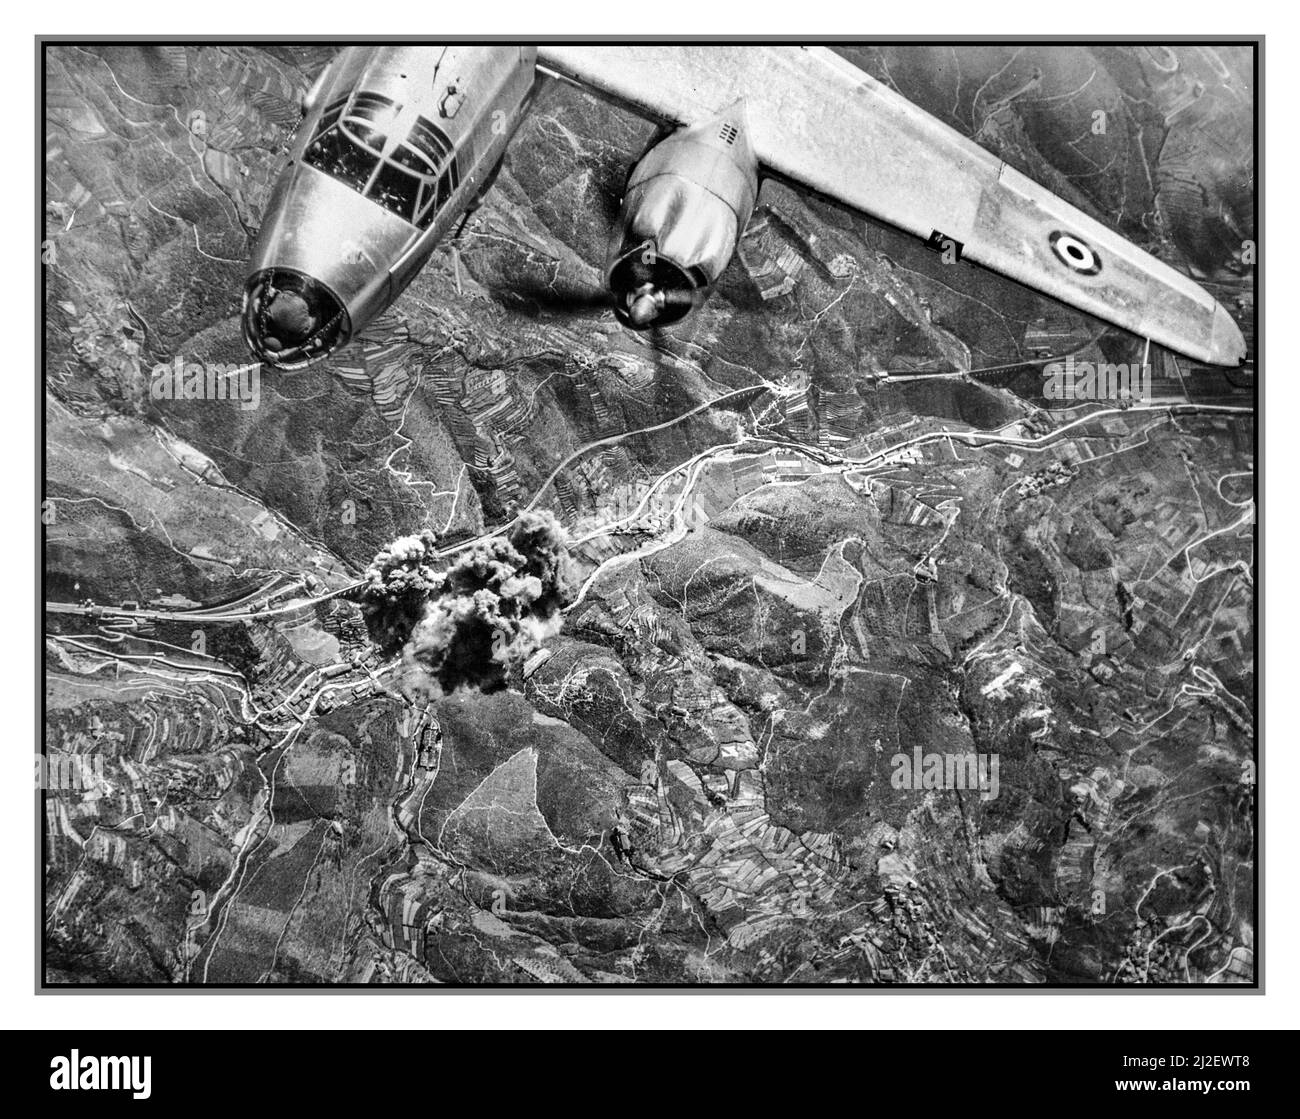 B26 BOMBER ITALIEN WW2 französische Flieger trafen ein punktgenaues Ziel. Die Franzosen flogen mit den Alliierten Luftstreitkräften im Mittelmeer unter dem Dreifarbton Frankreich und teilten eine wichtige Eisenbahnbrücke, 600 Fuß lang und 15 Fuß breit, am Viadukt von Pitecchio in Mittelitalien. Der Bombenaimer krümmerte sich im B26. September über seinem Anblick. Auf dem Flügel des amerikanischen B-26 Bombers ist das Rundel der französischen Luftwaffe, USA, zu sehen. Informationen zum Kriegsbüro. Bildabteilung Für Übersee. Washington Division; 1944. Stockfoto